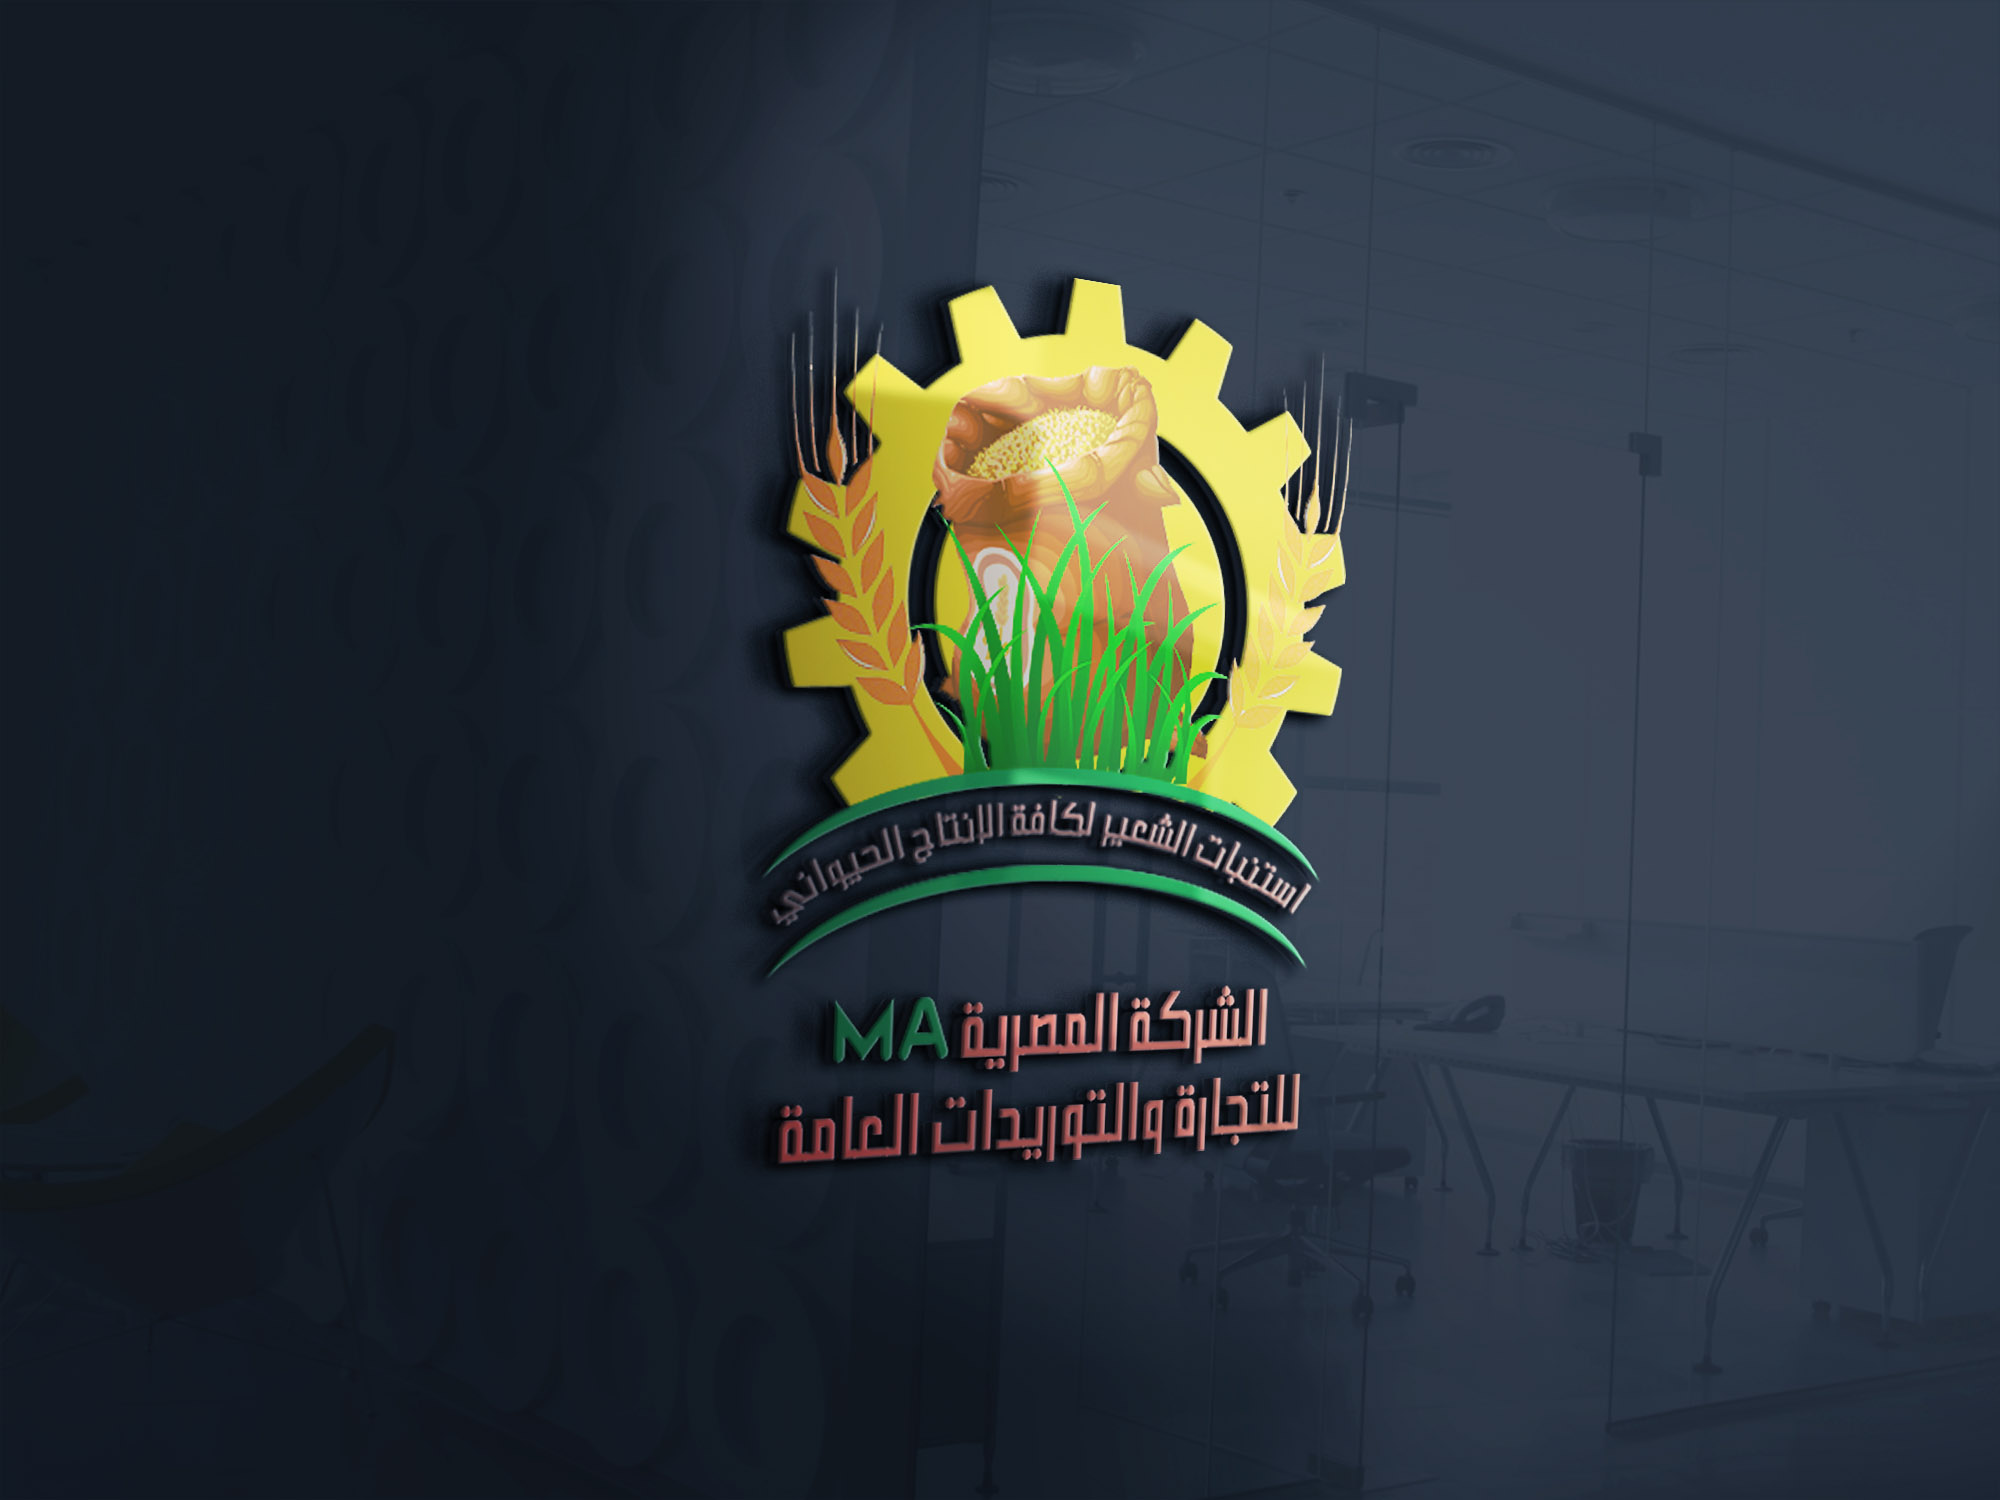 موكاب تصميم شعار الشركة المصرية MA لاستبات الشعير والإنتاج الحيواني 1